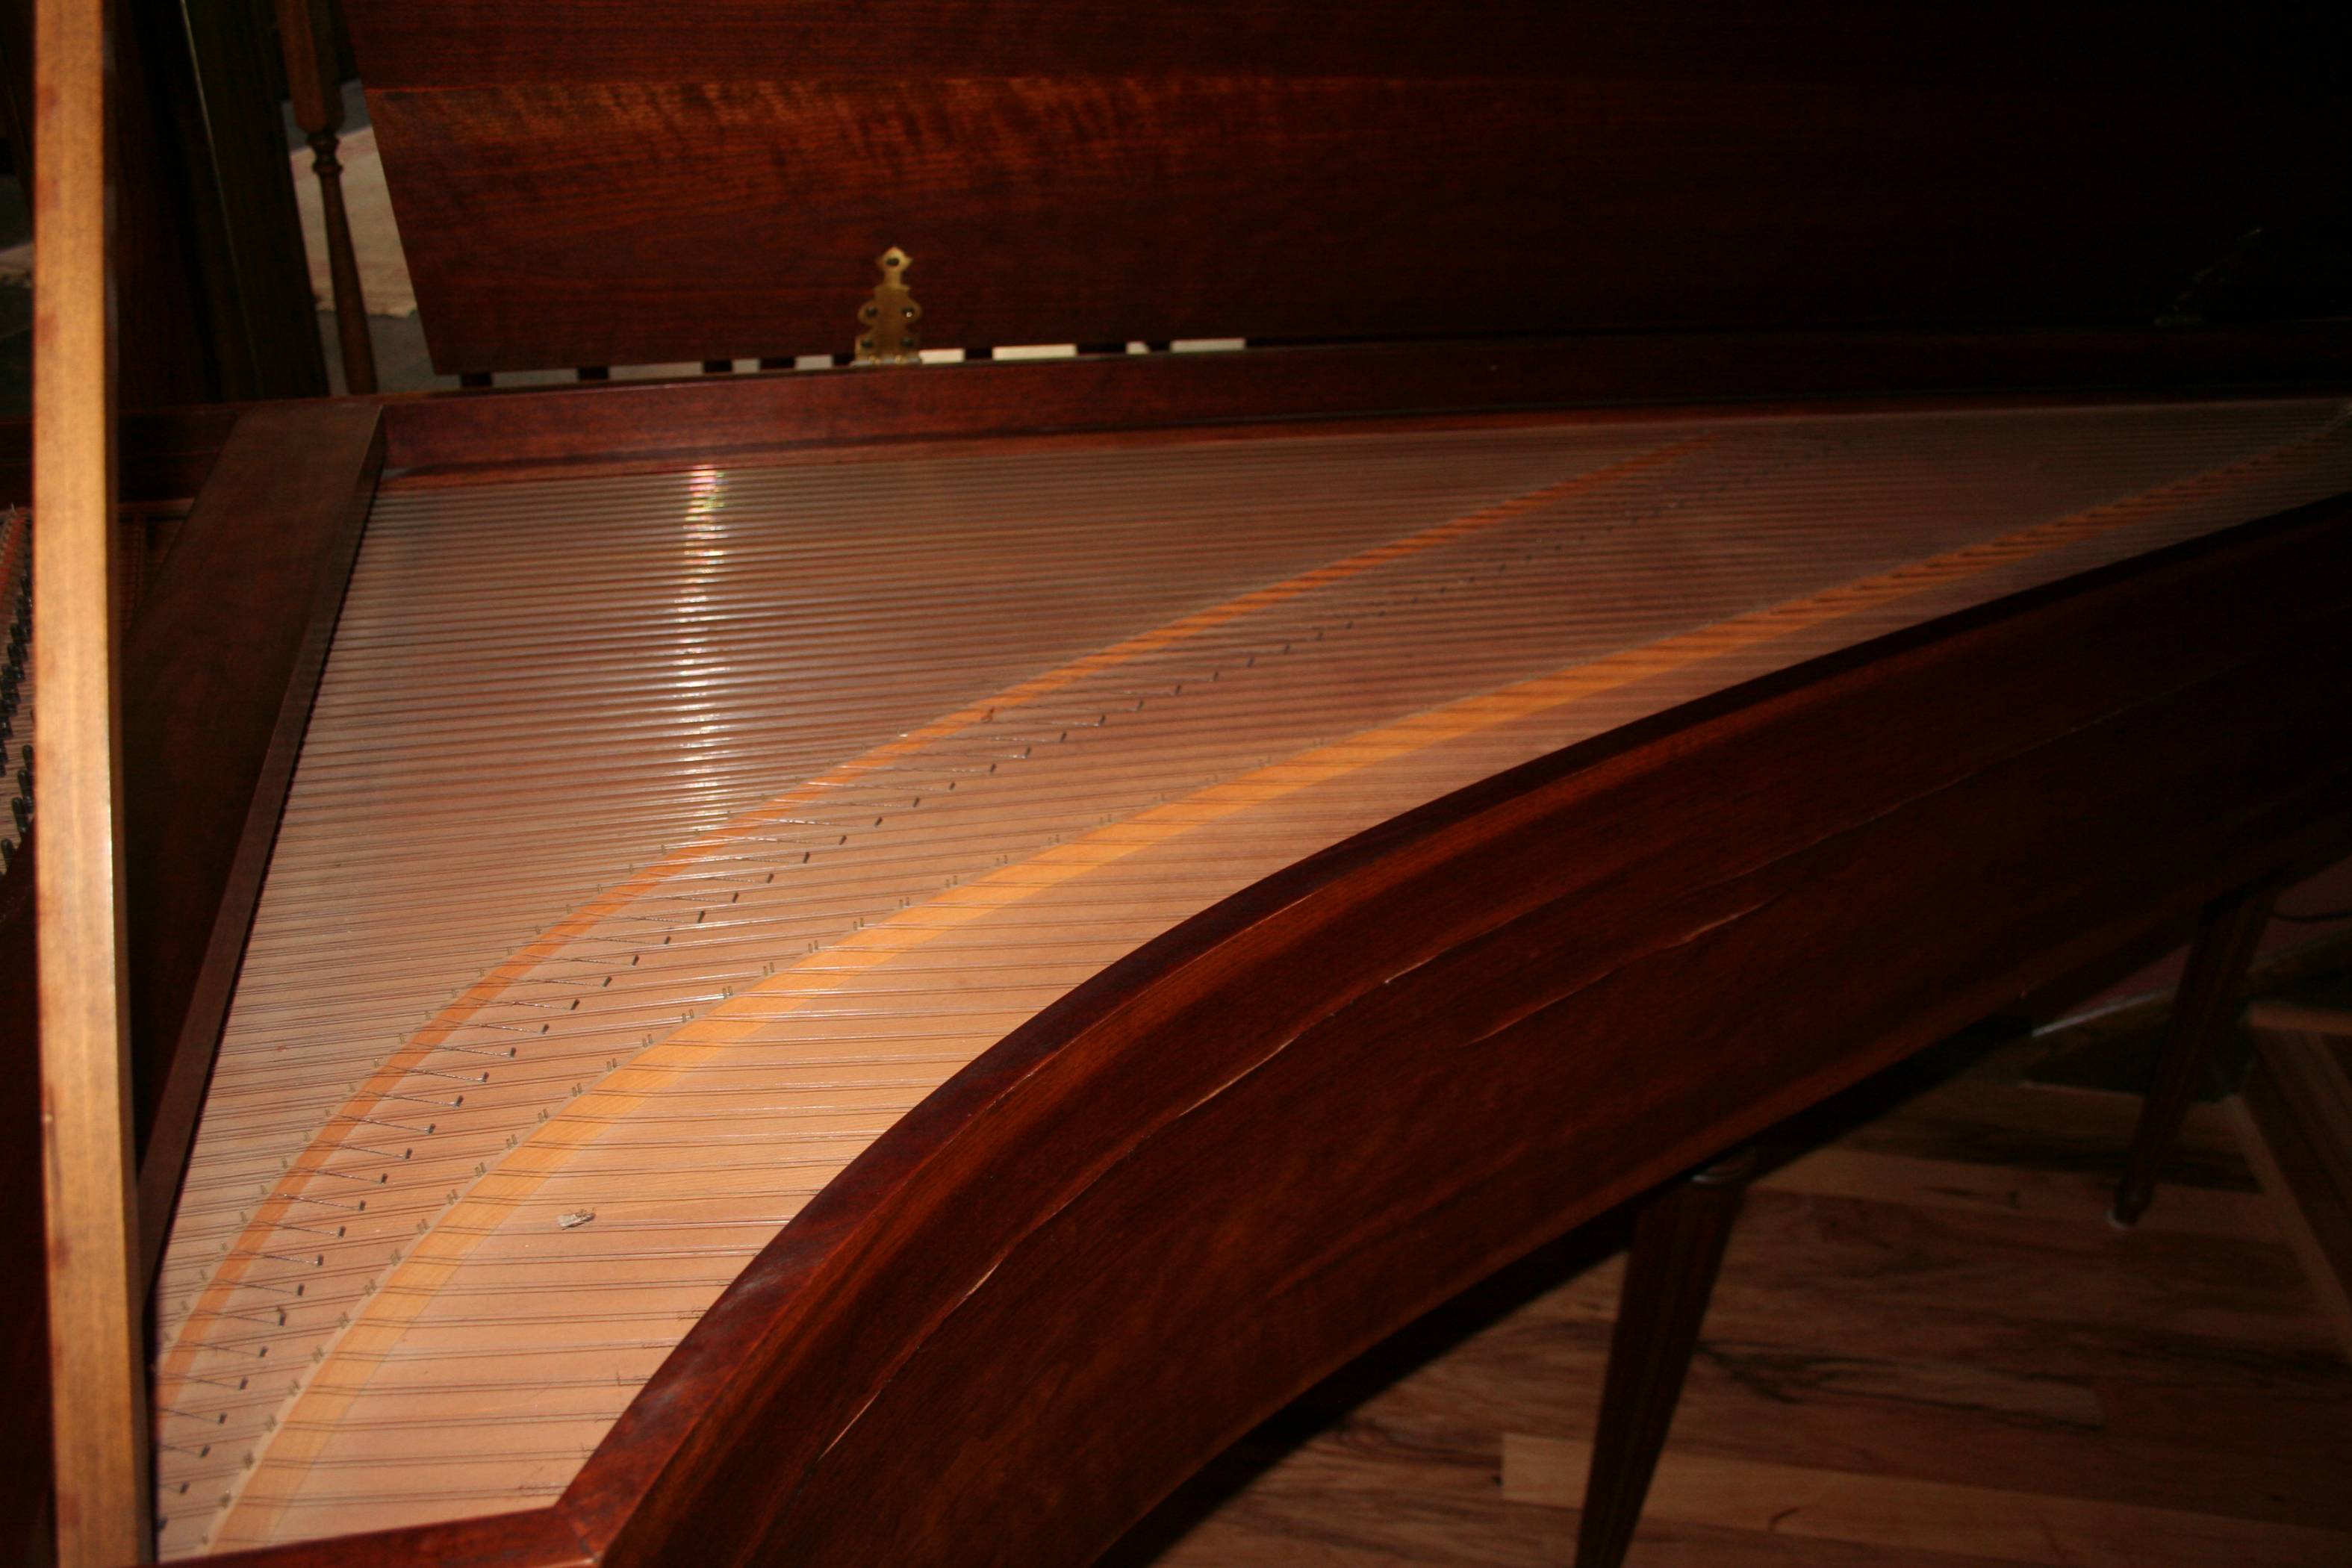 Hubbard Taskin Harpsichord 81